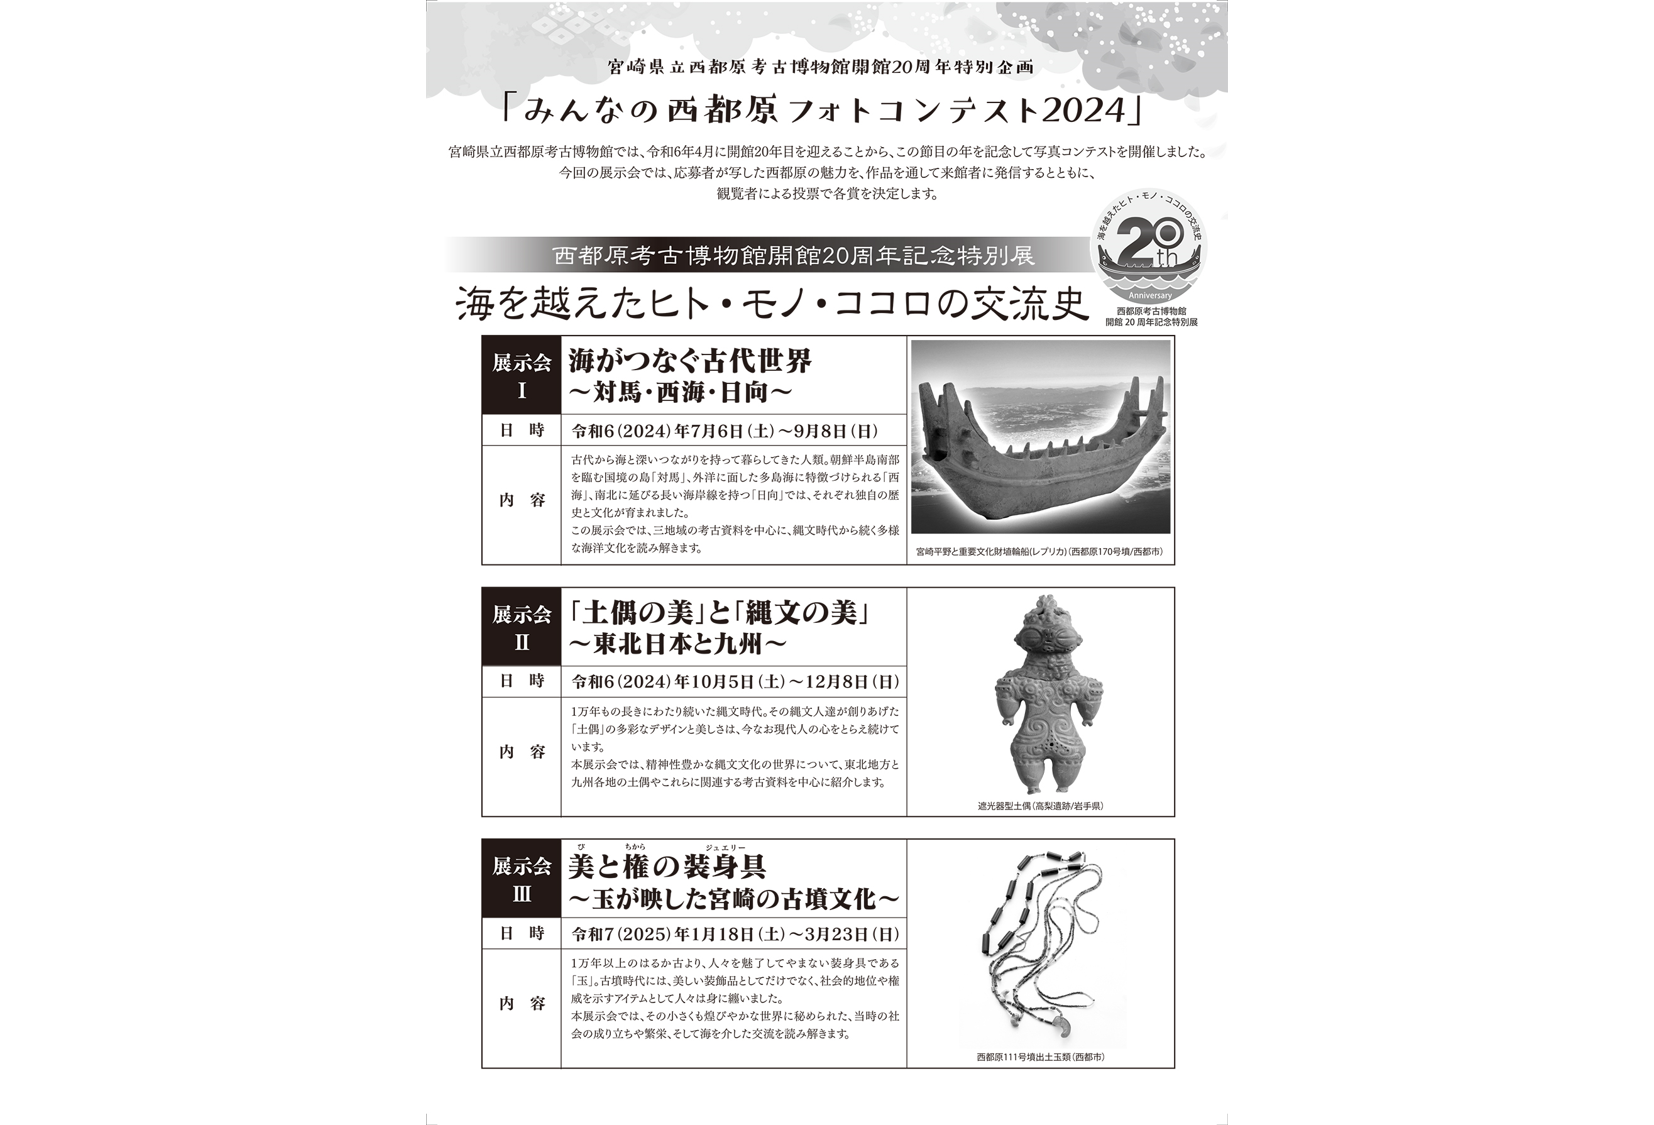 【2024】西都原考古博物館イベント情報-3